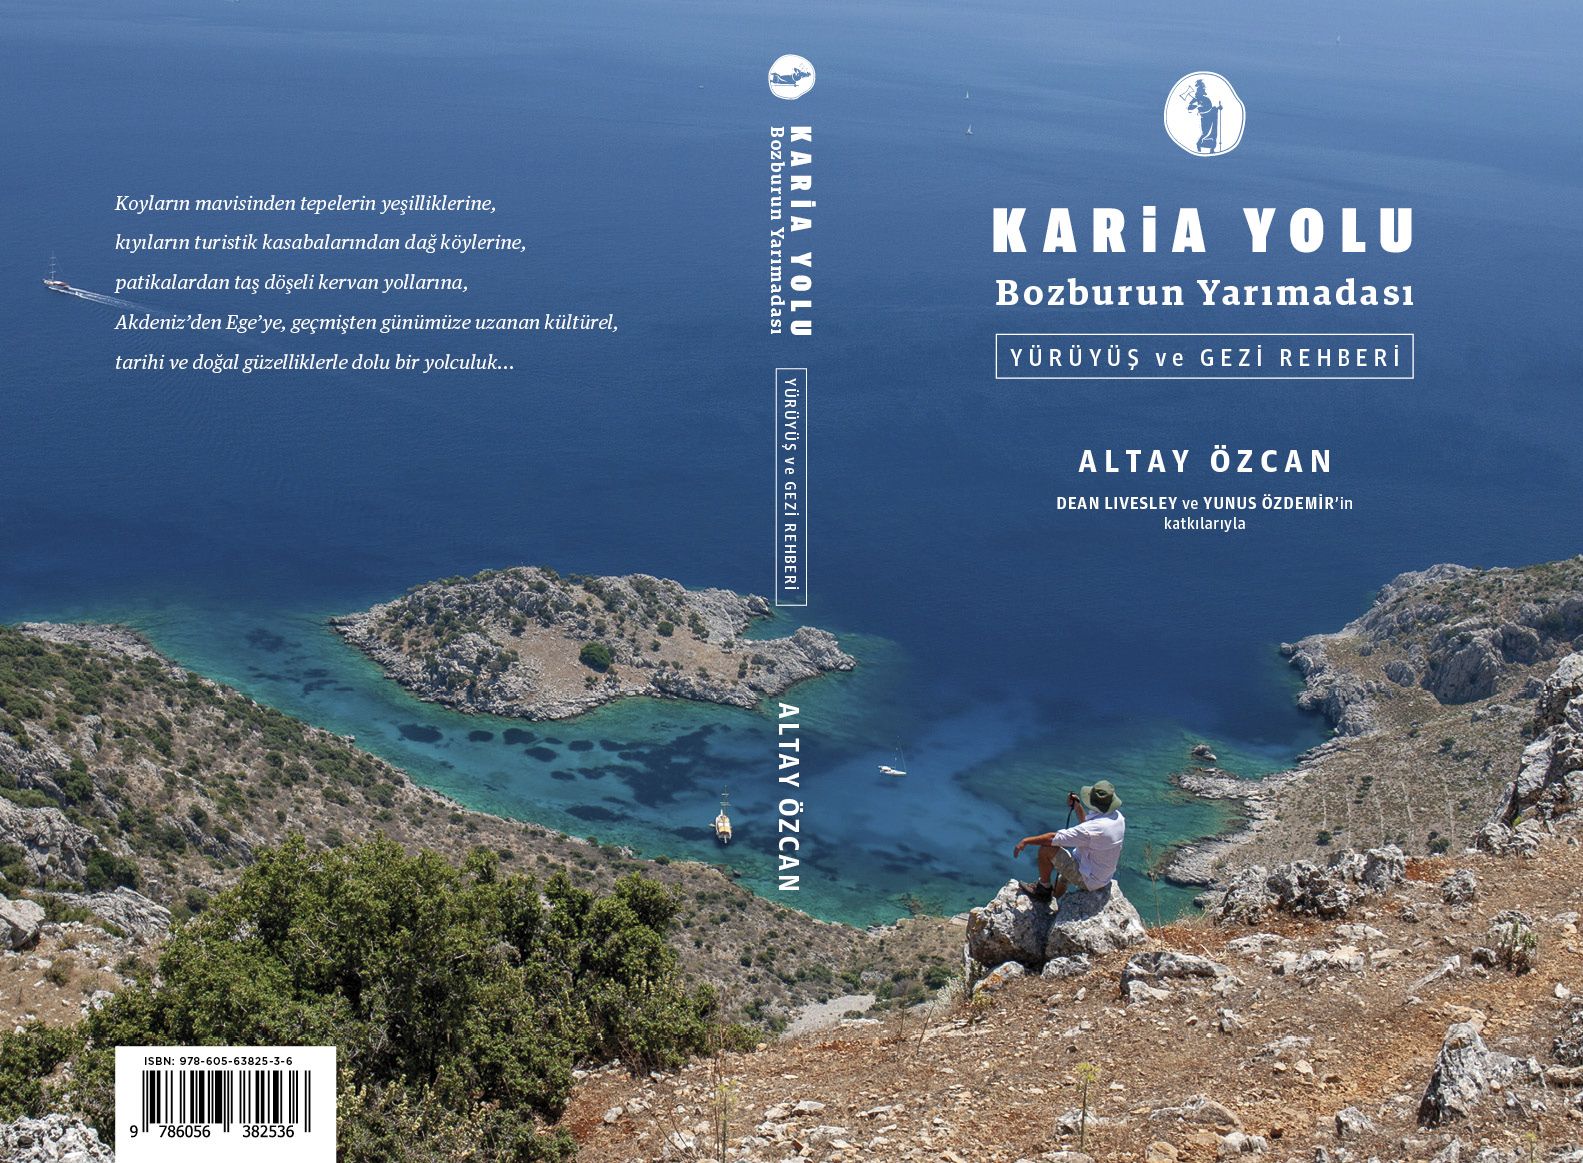 Karia Yolu: Bozburun Yarımadası Yürüyüş ve Gezi Rehberi